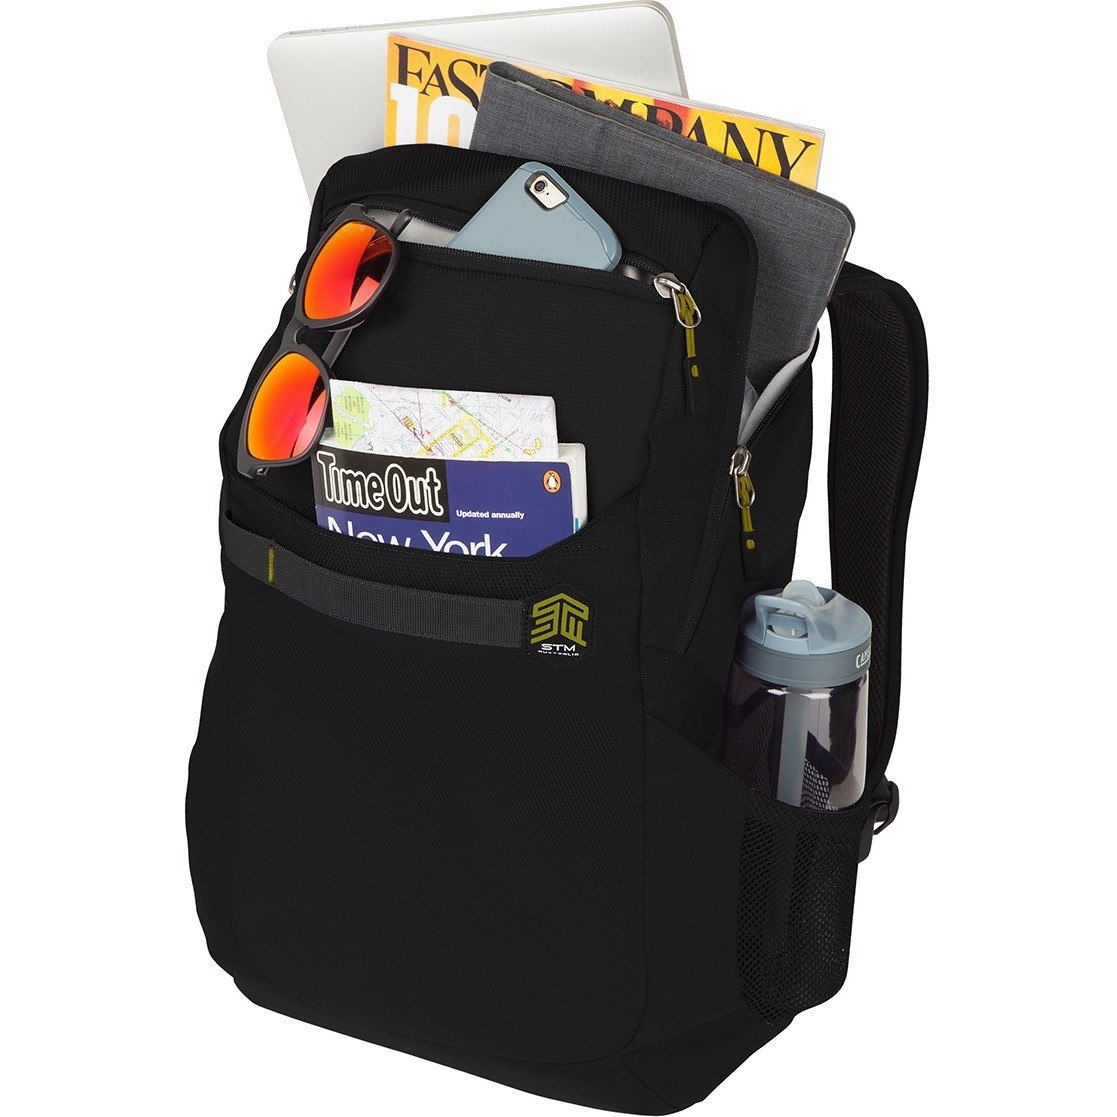 STM Goods Saga Backpack - Fits Up To 15" Laptop - Black - Retail